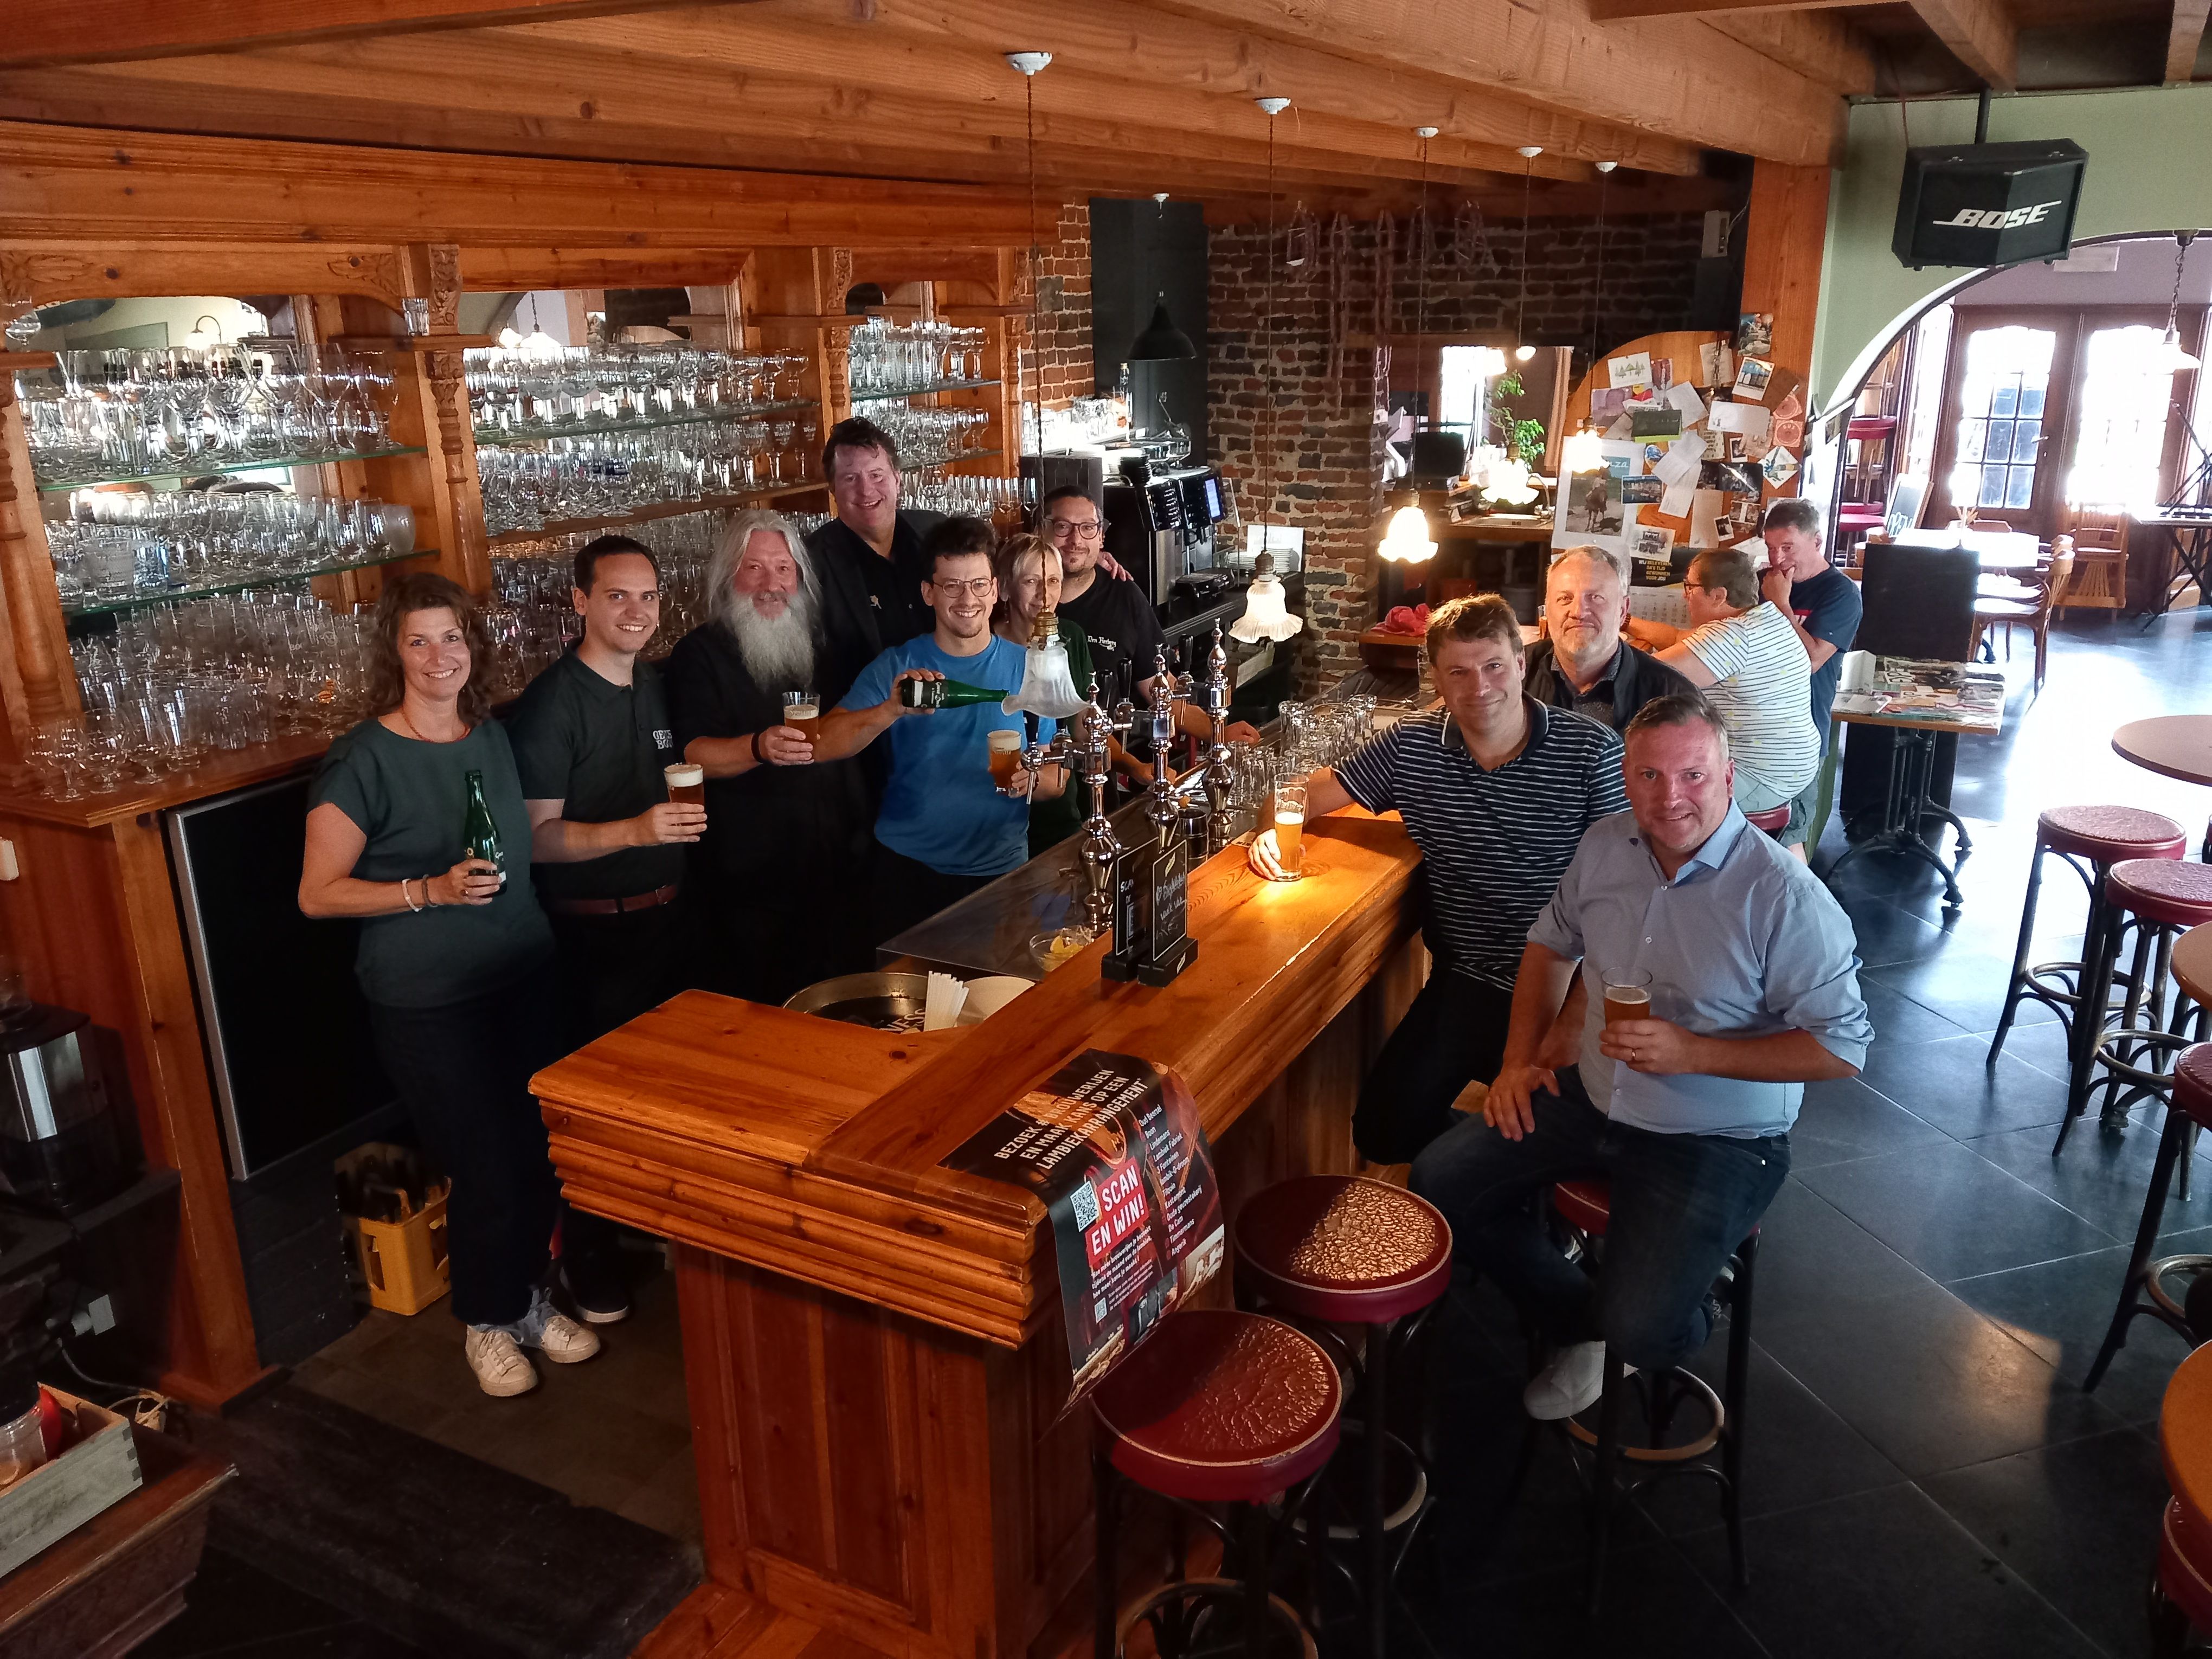 Op 18 september werd de nieuwe editie van de Maand van de Lambiek in café-brouwerij Den Hertog in Buizingen.